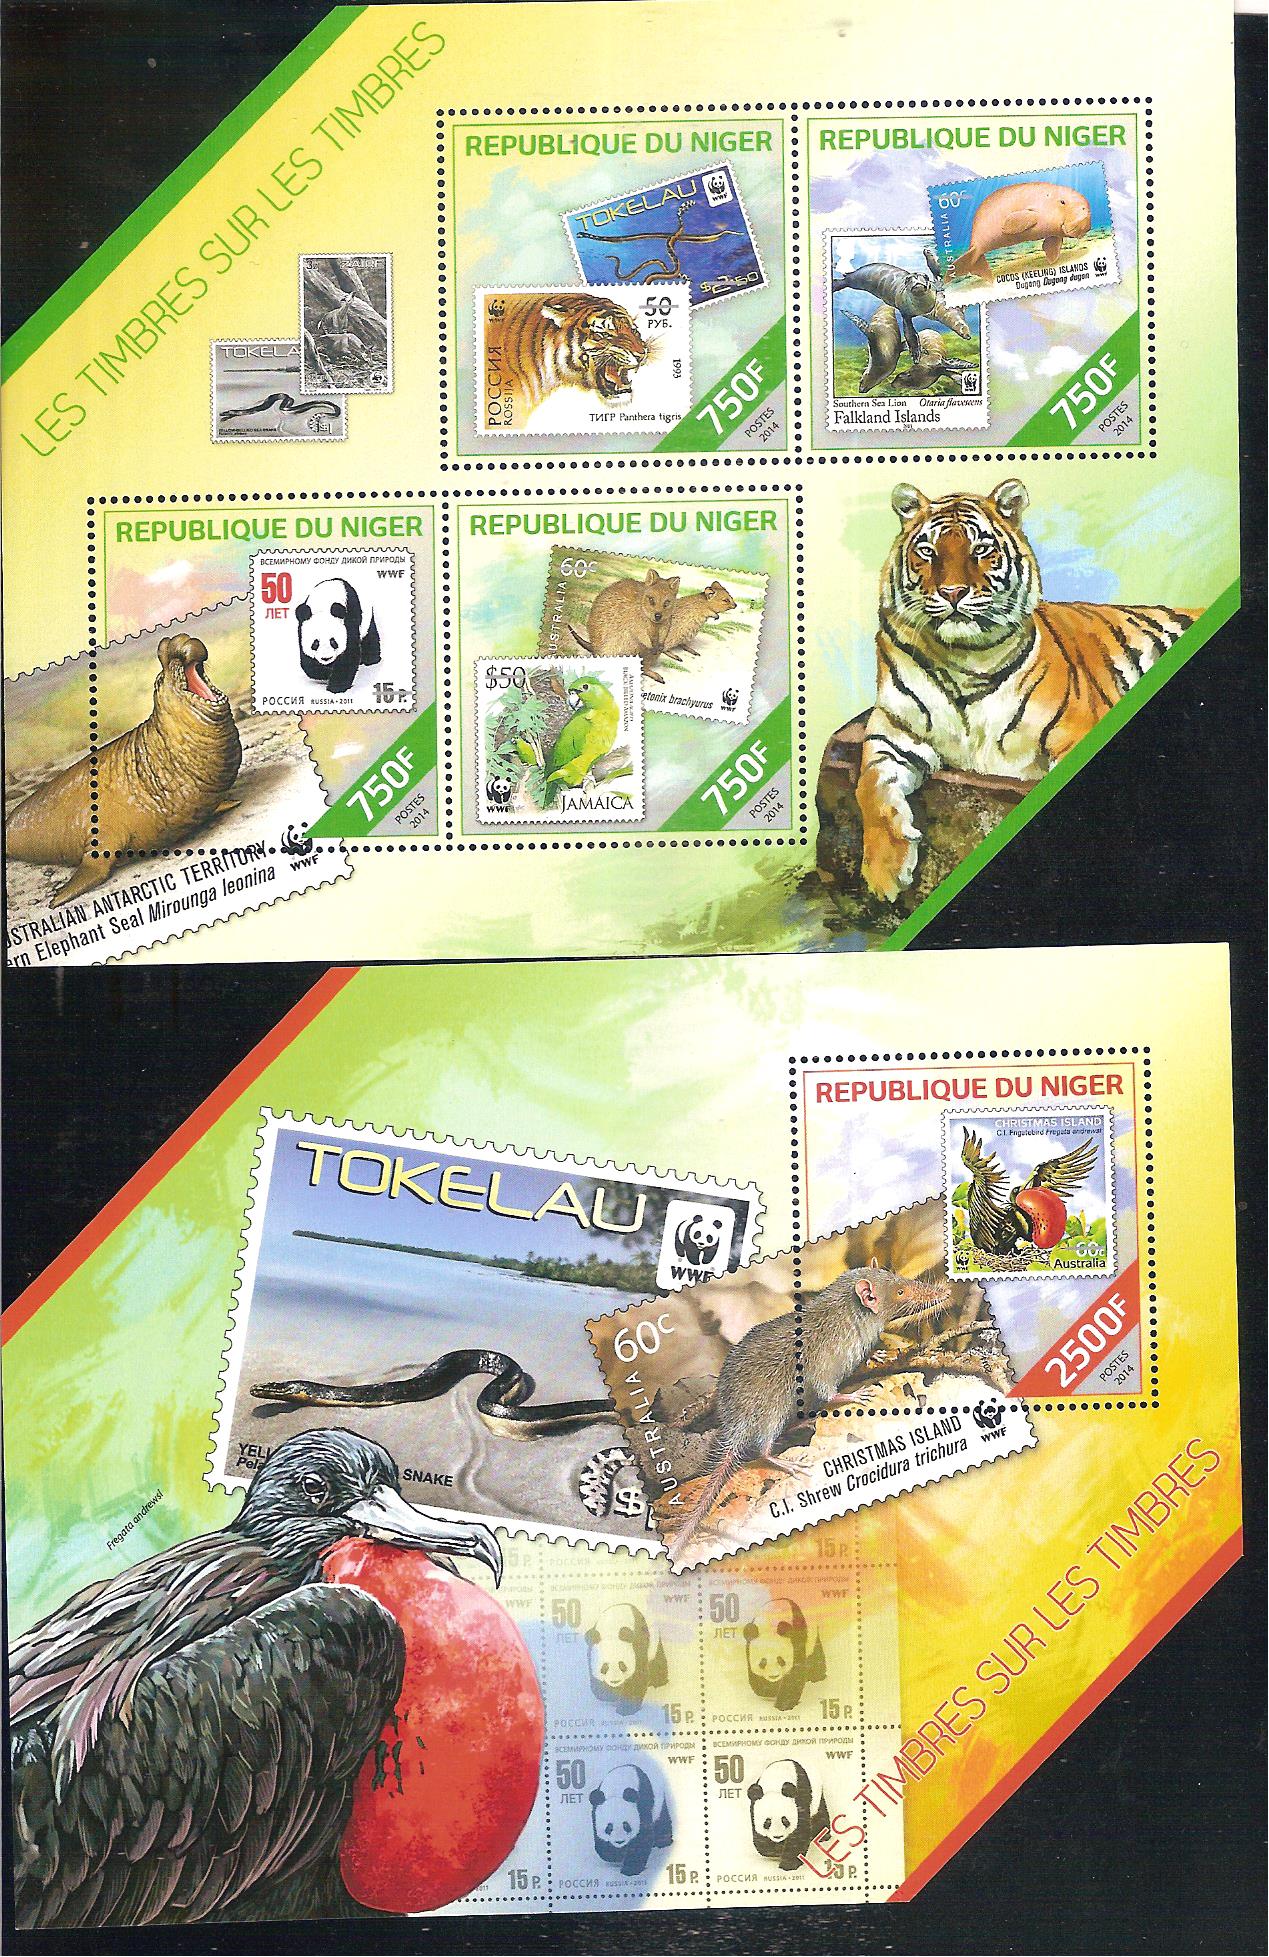 Niger f.su francobollo 001